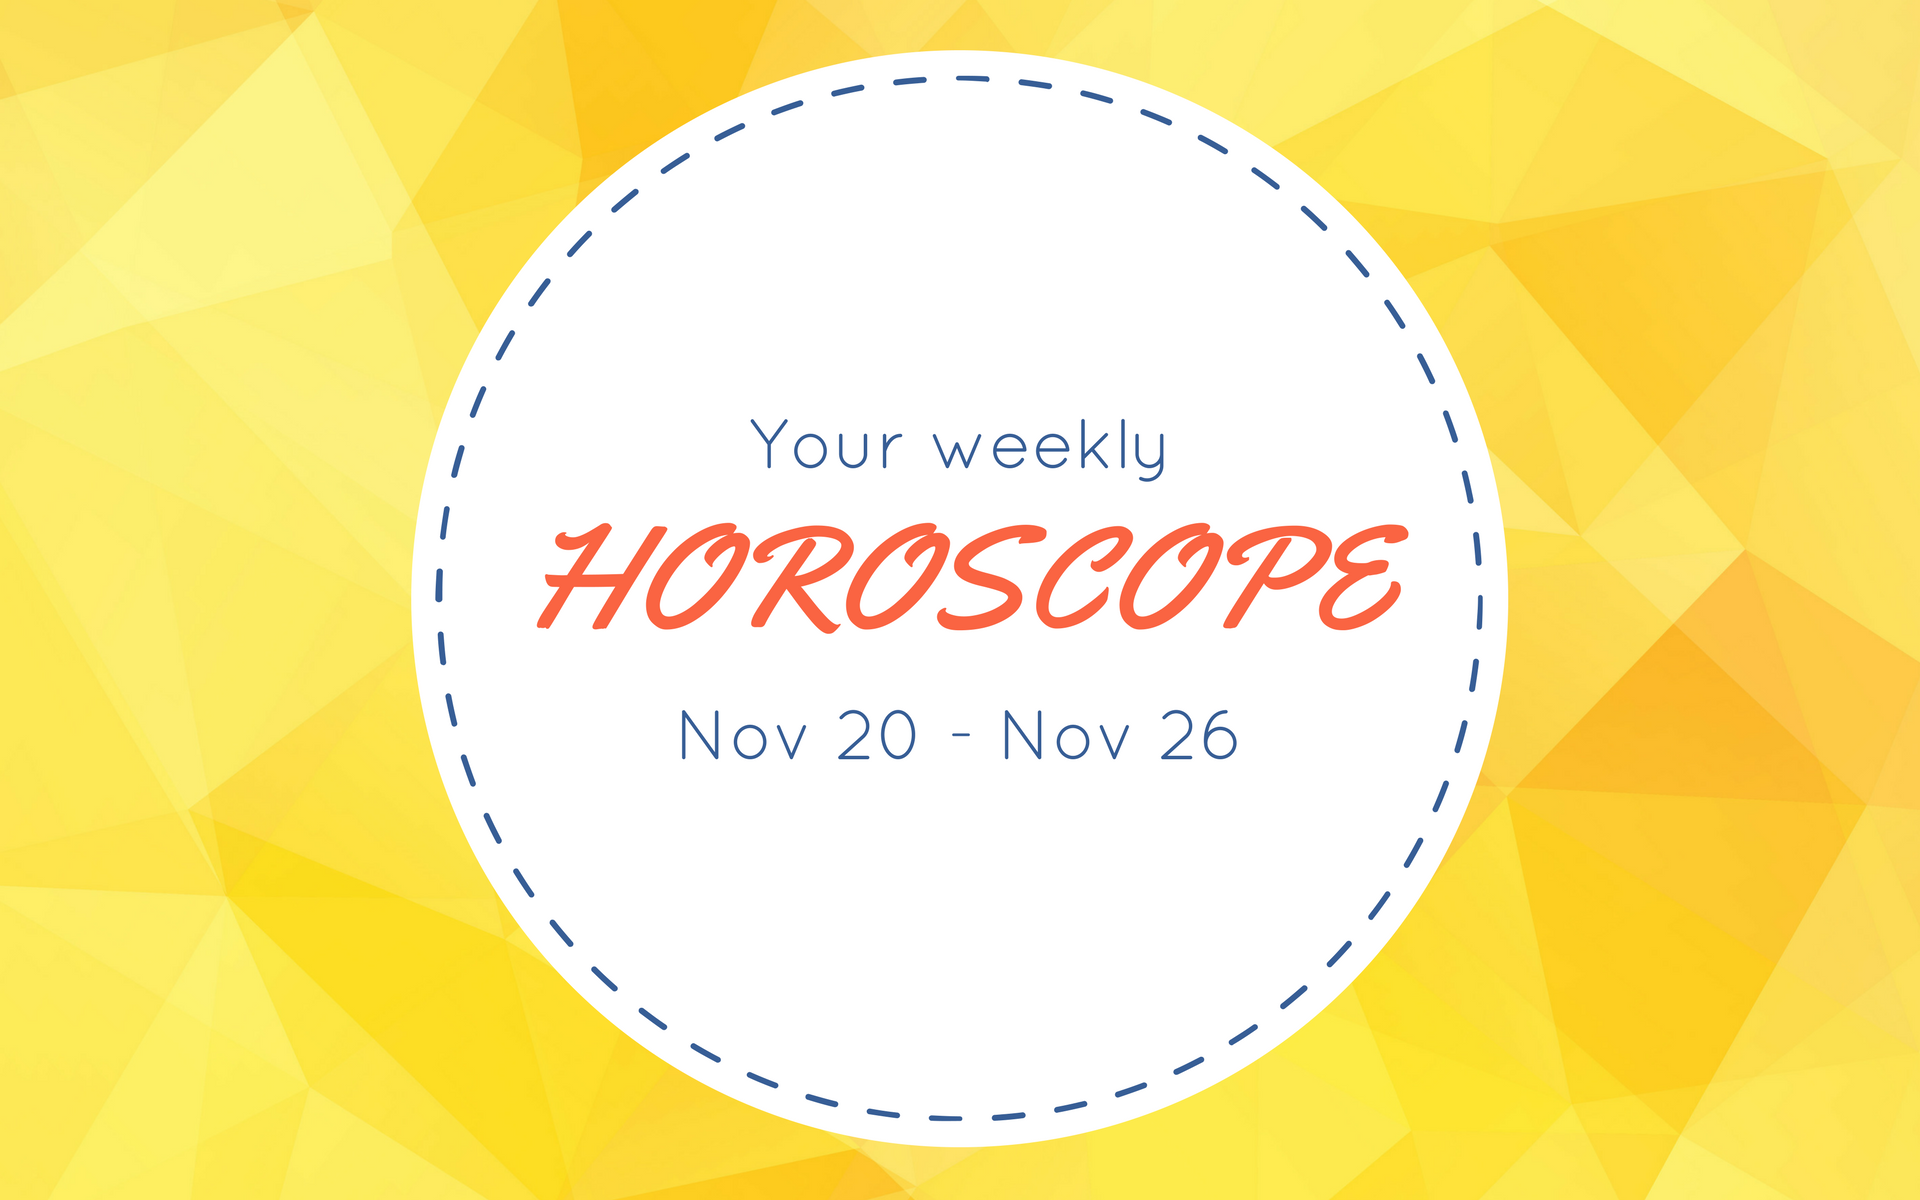 Your Weekly Horoscope: Nov 20 - Nov 26